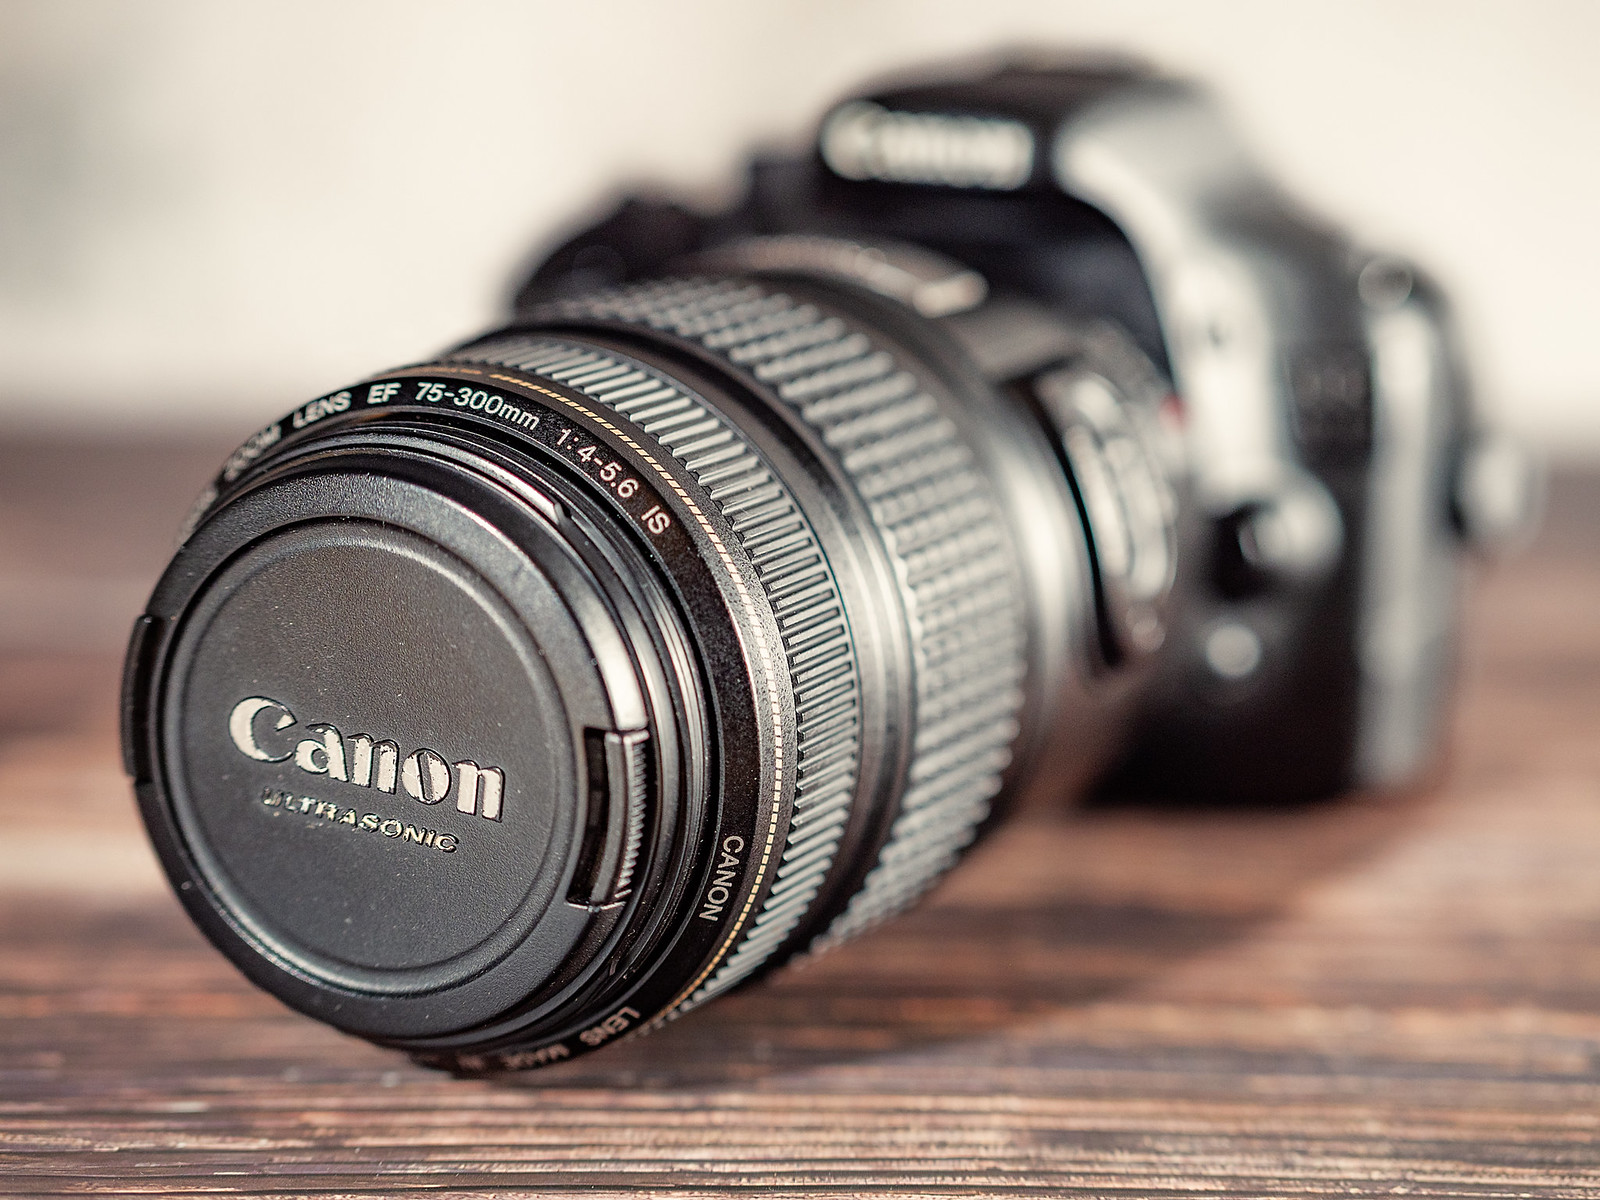 Canon EOS 550d